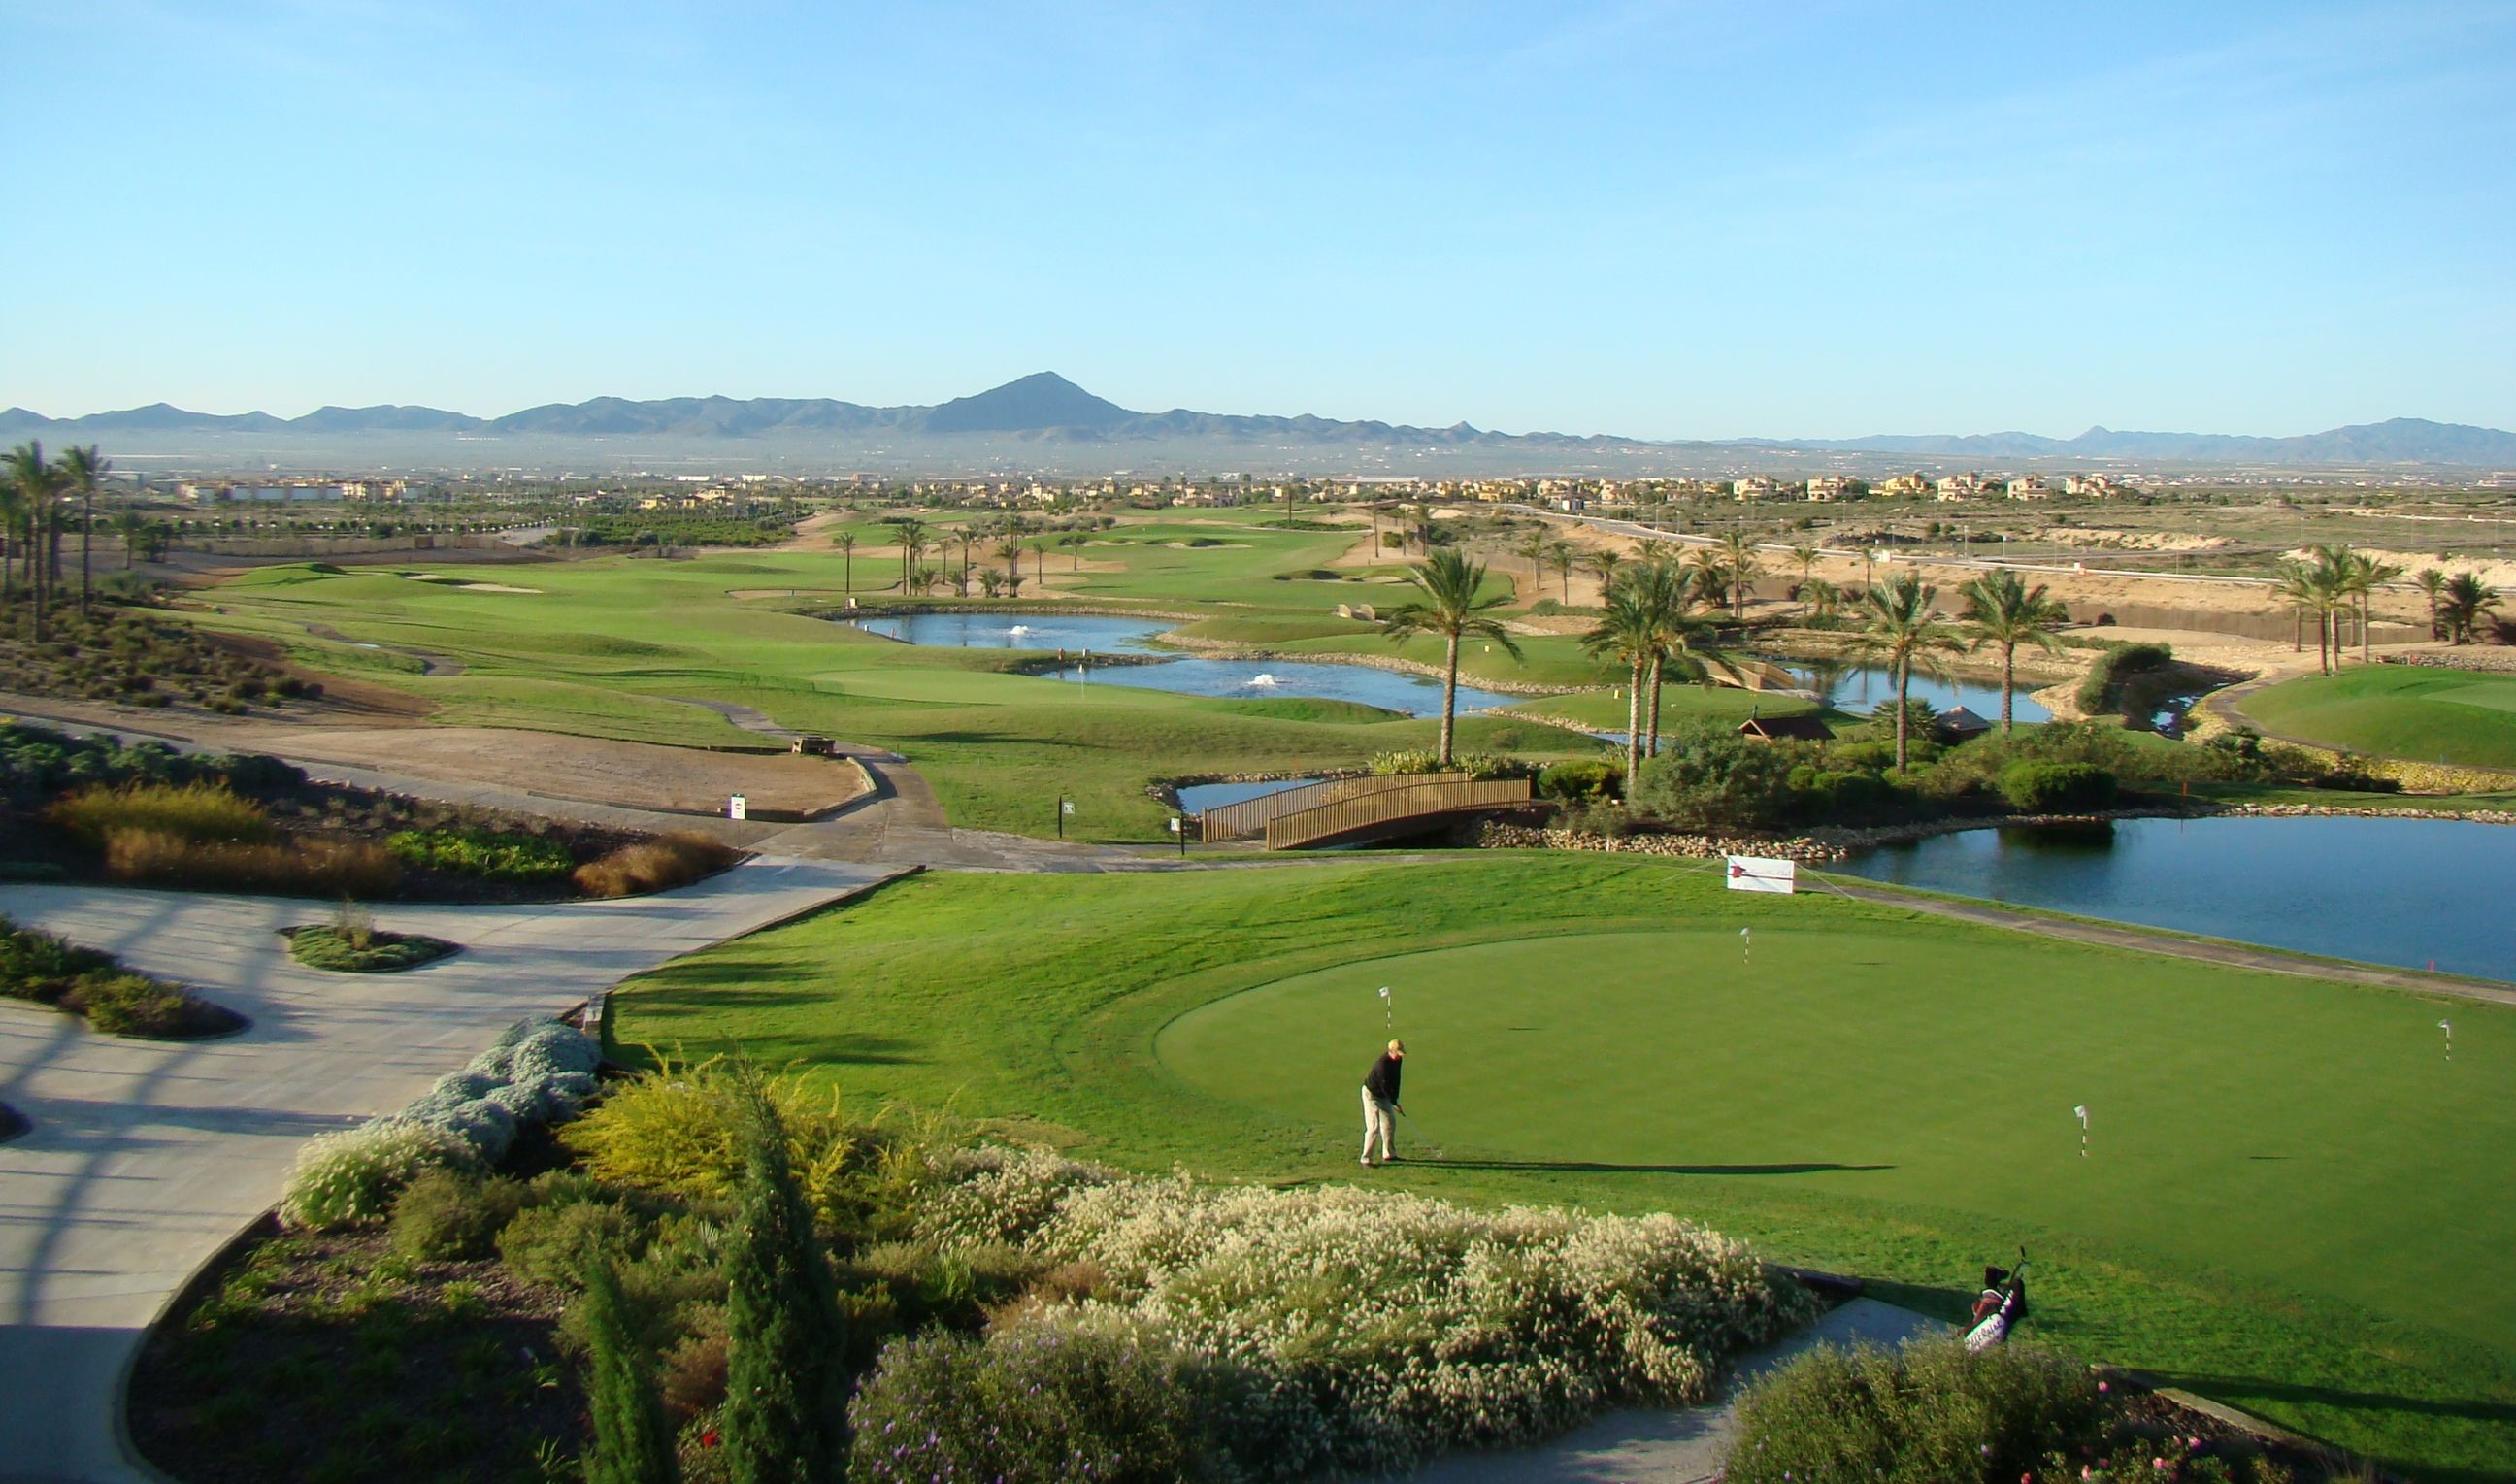 Murcia, Spanien, Hacienda del Alamo Golf Course